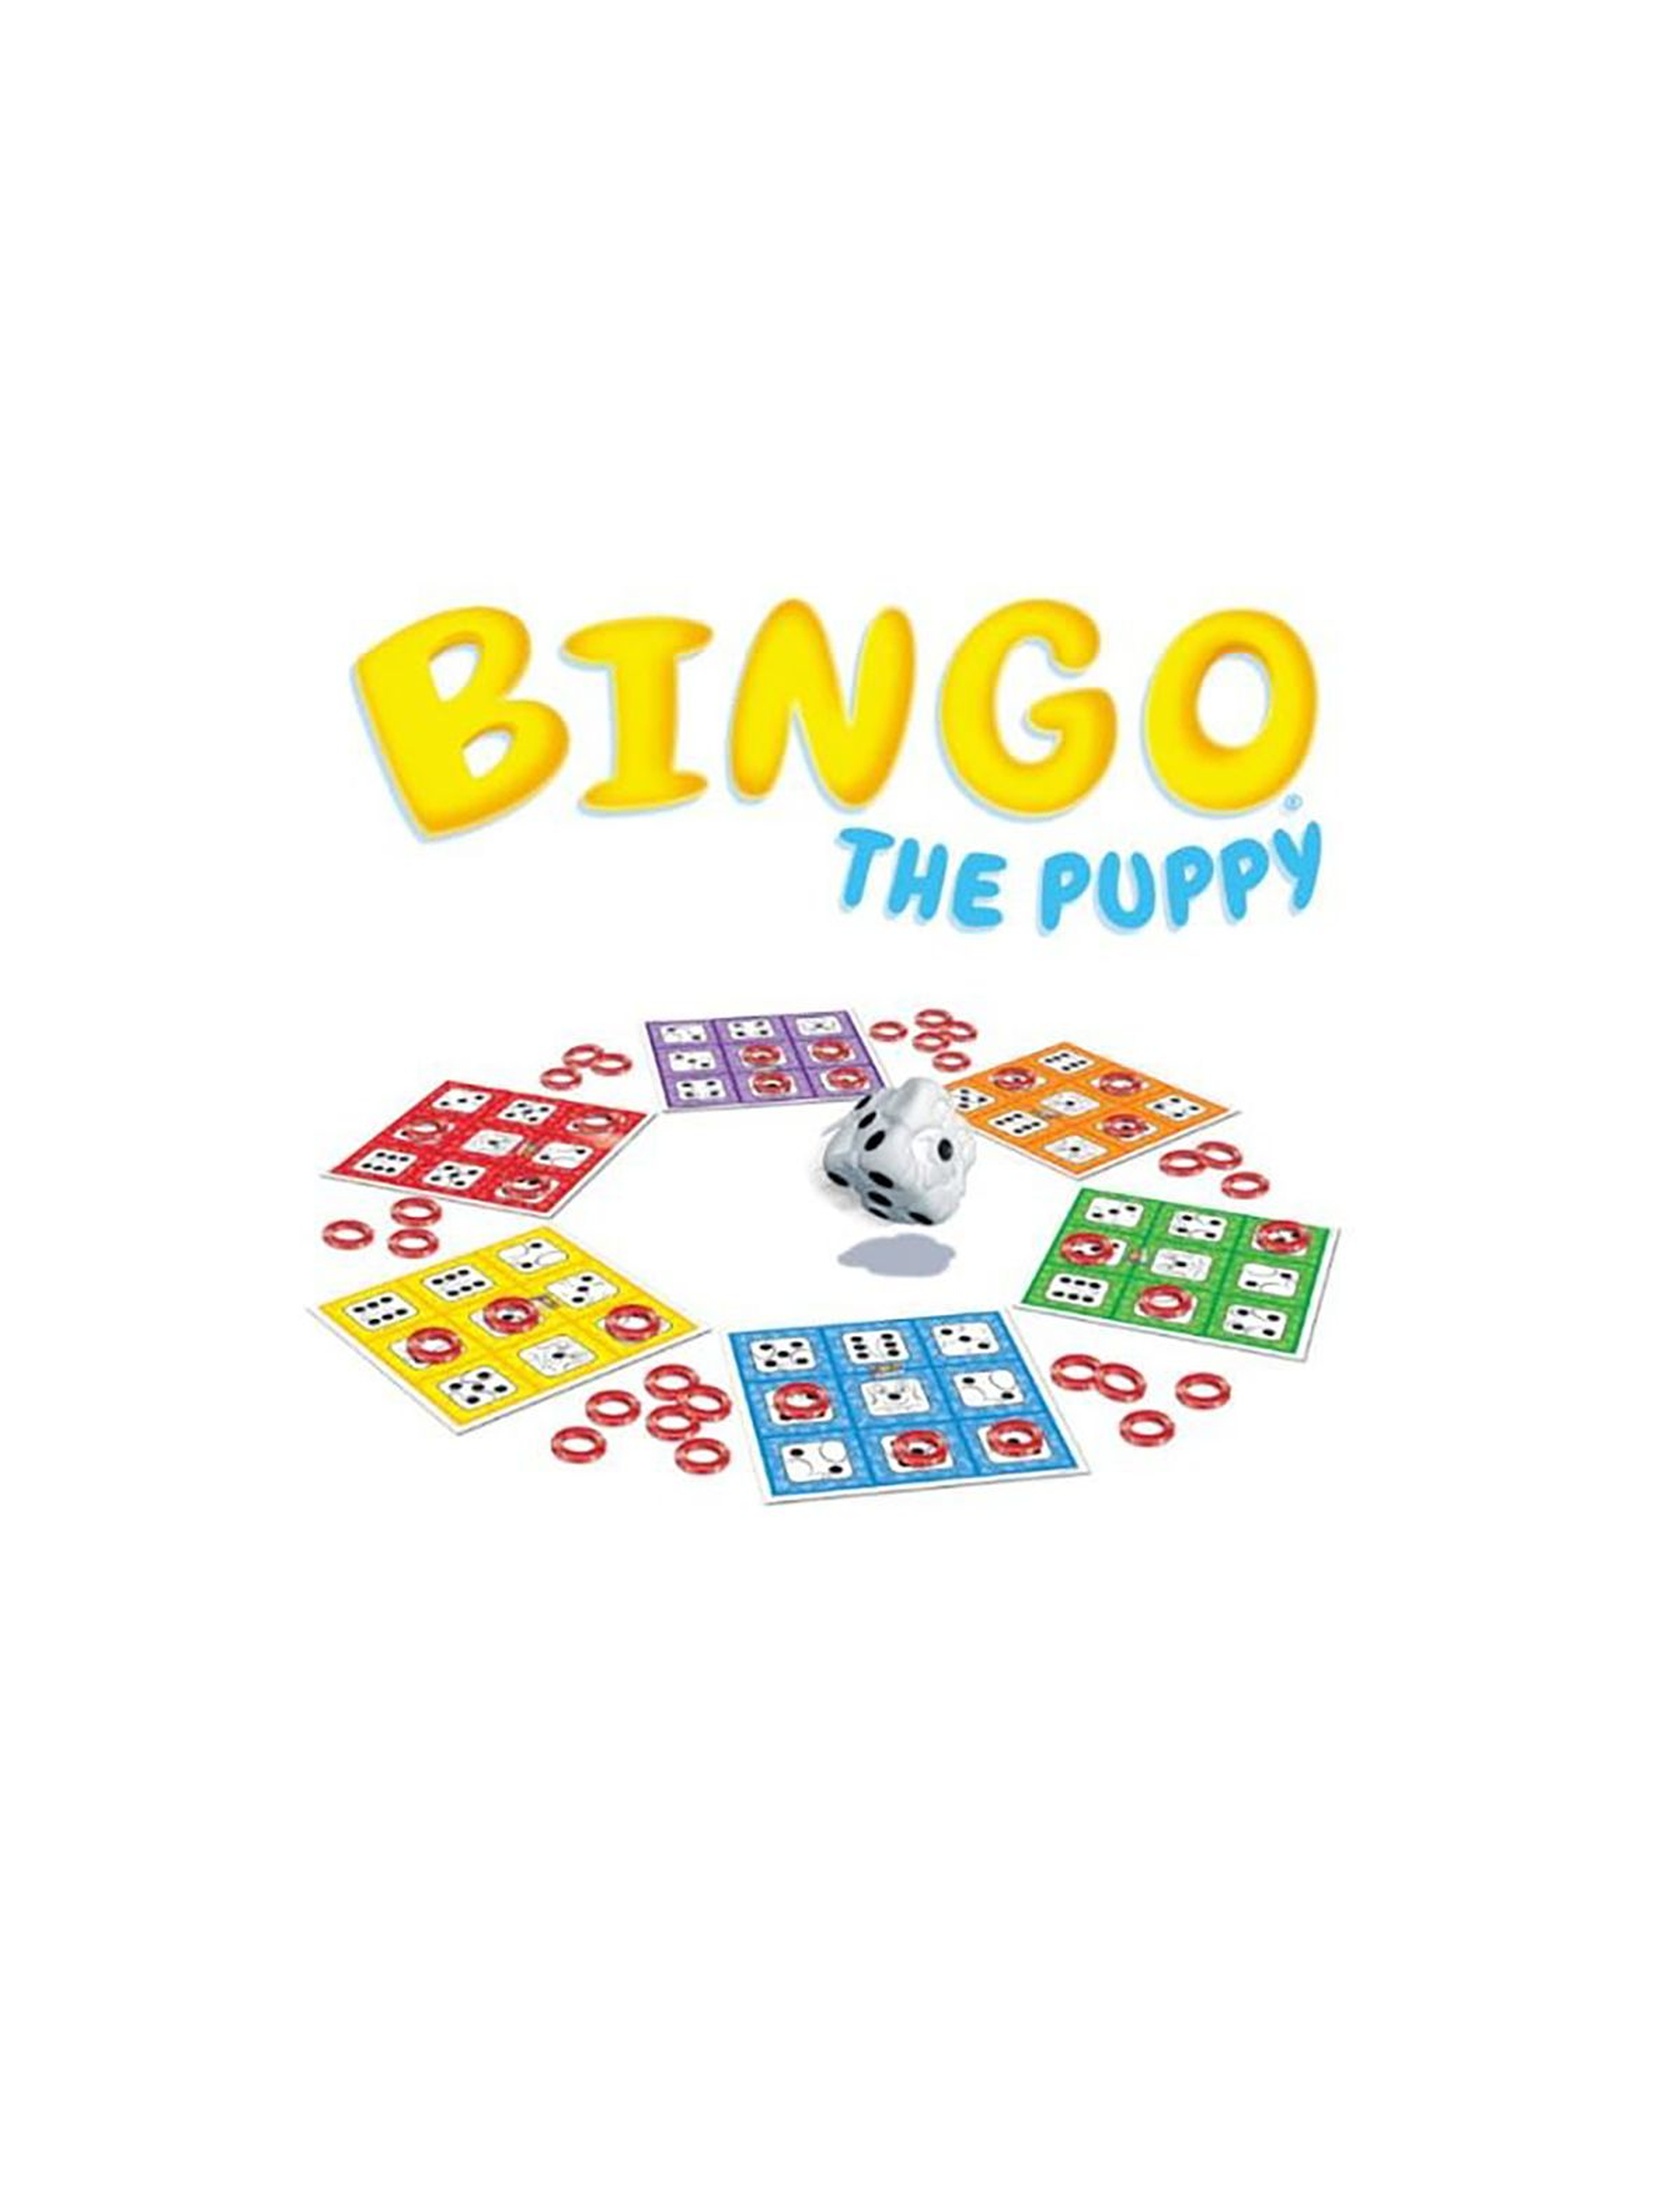 Gra Bingo z Ringo piesek Bingo the Puppy -wiek 3+